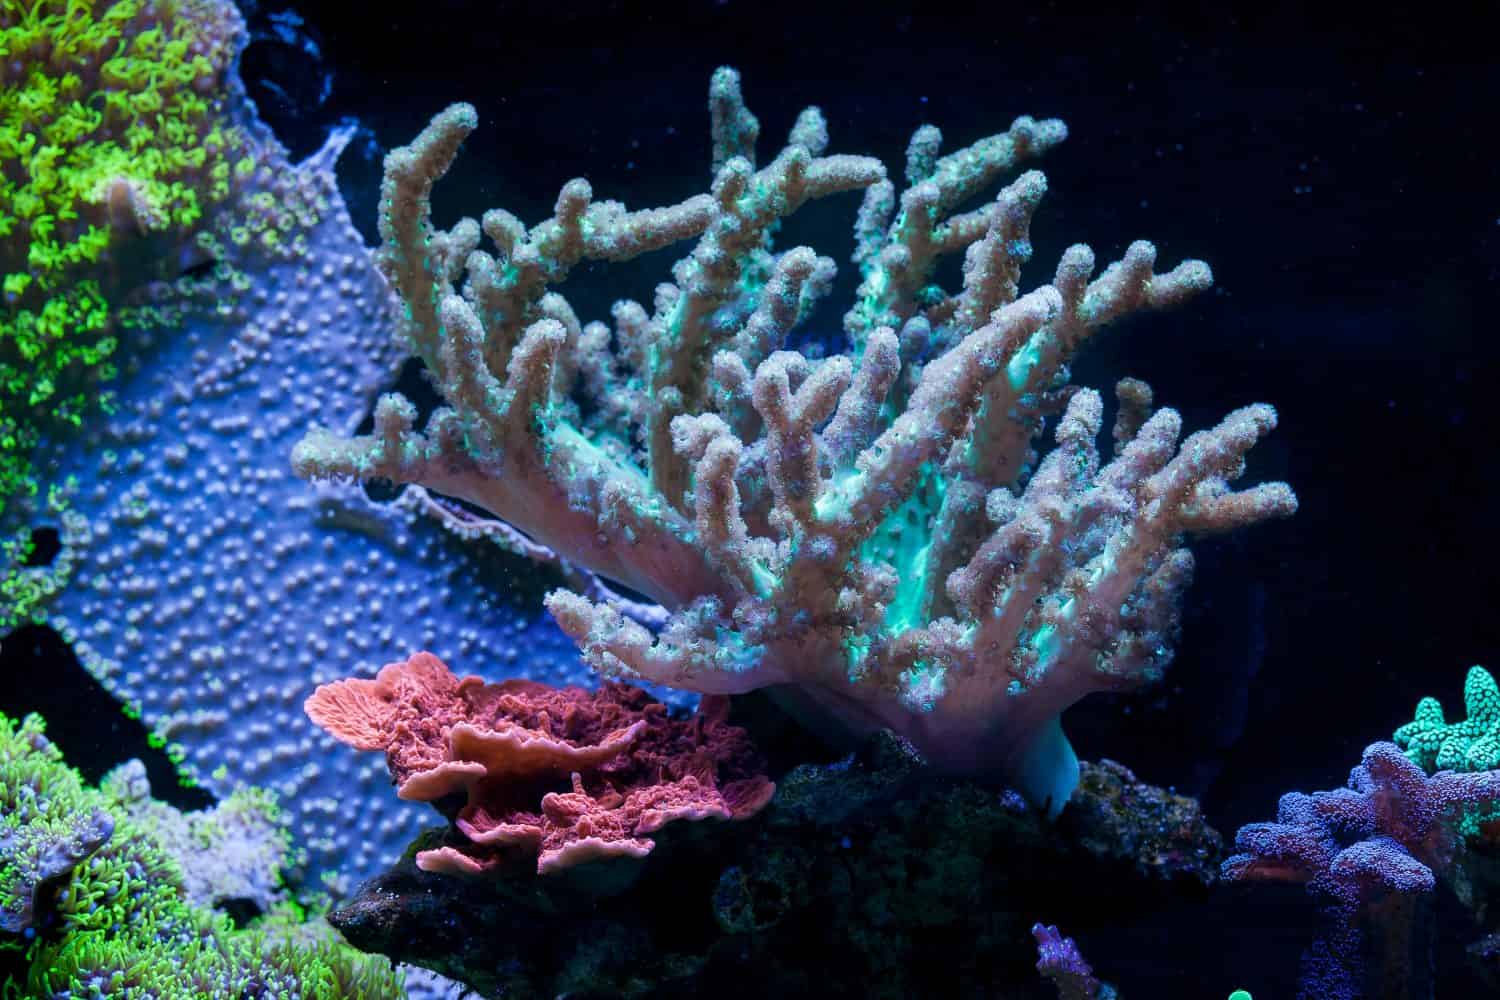 Sinularia dura in Home Coral reef aquarium. Selective focus.